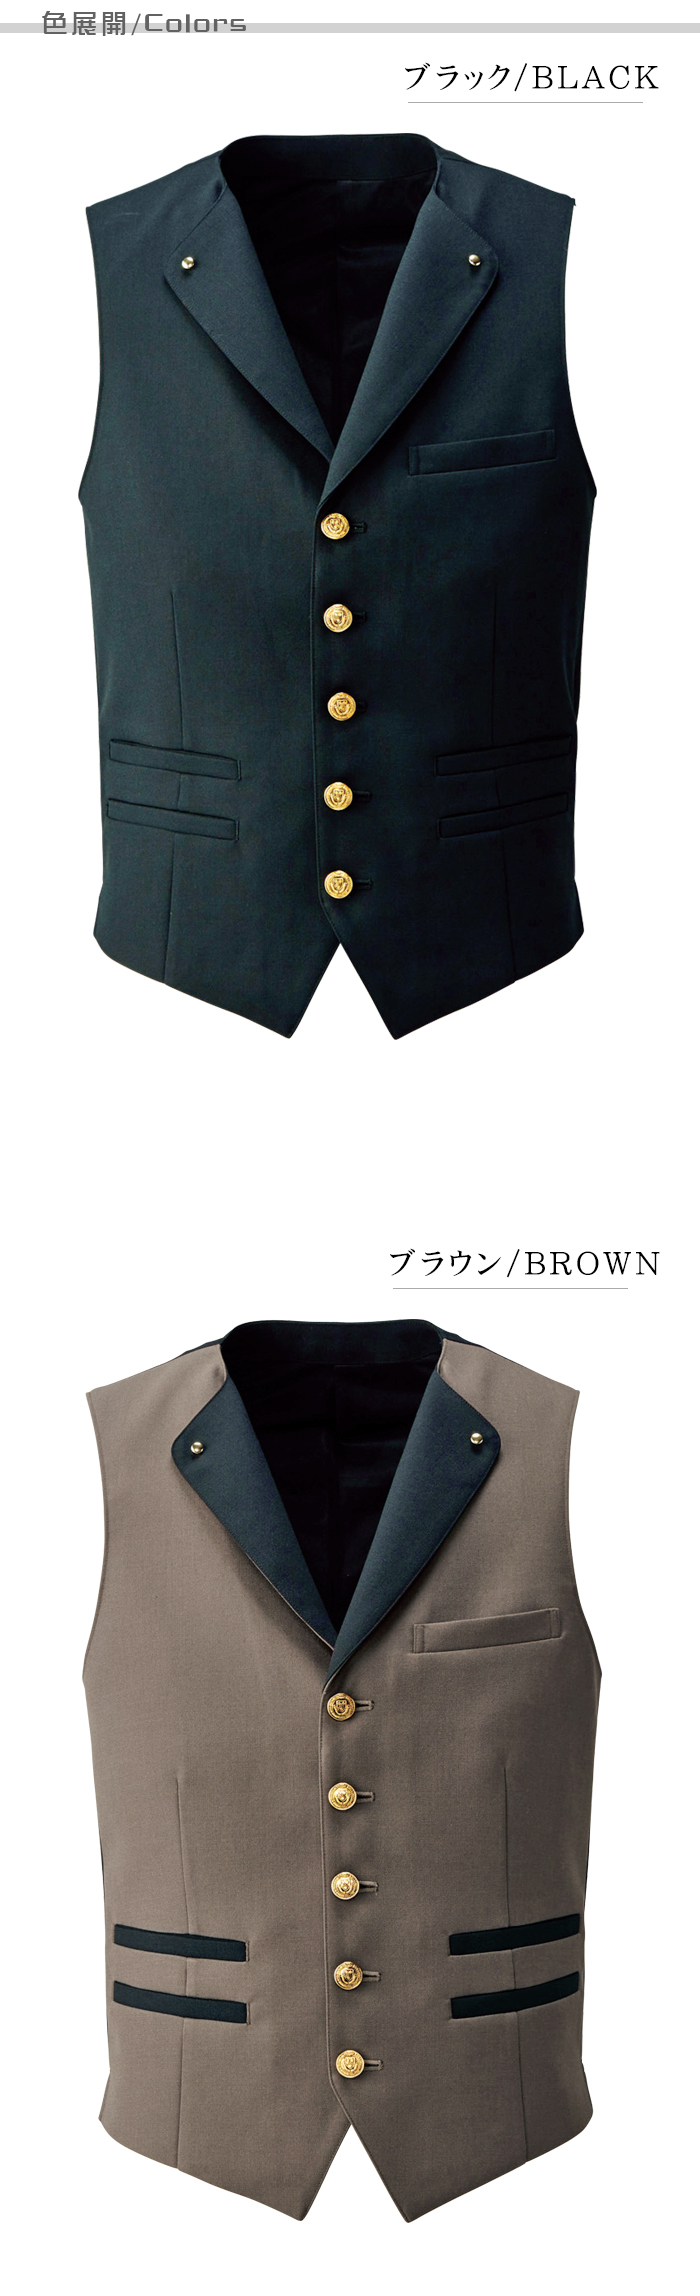 TEP702 業務用制服　襟付きフォーマルベスト(男)高級感があり個性的なデザイン金ボタン付き カラー展開